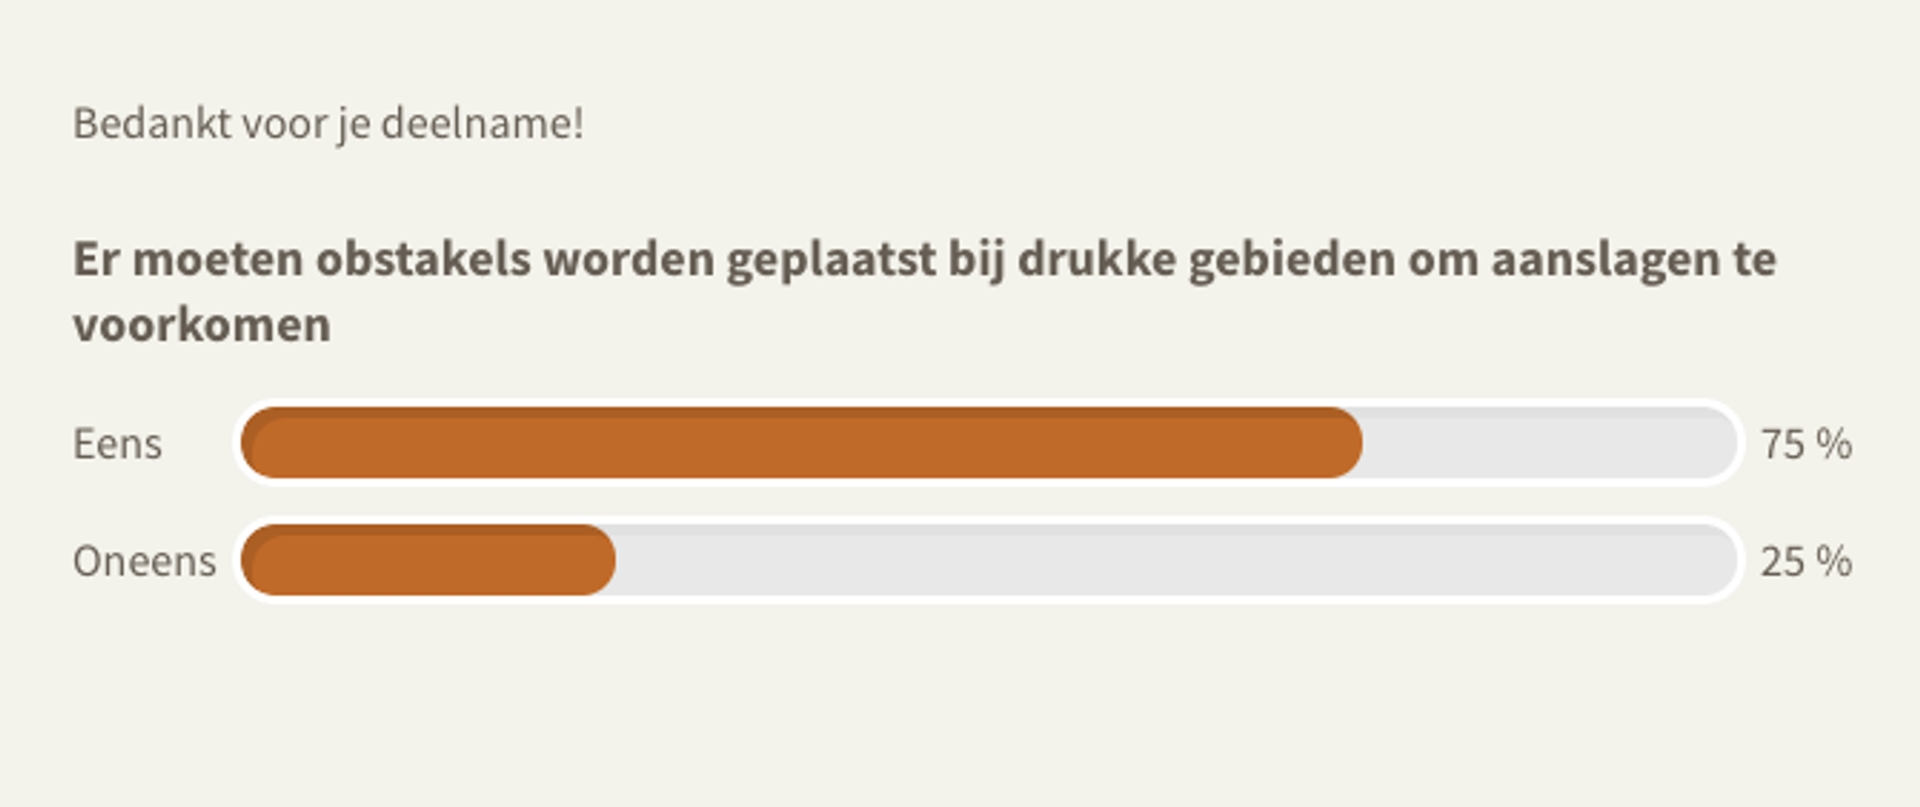 poll obstakels in binnensteden nederland